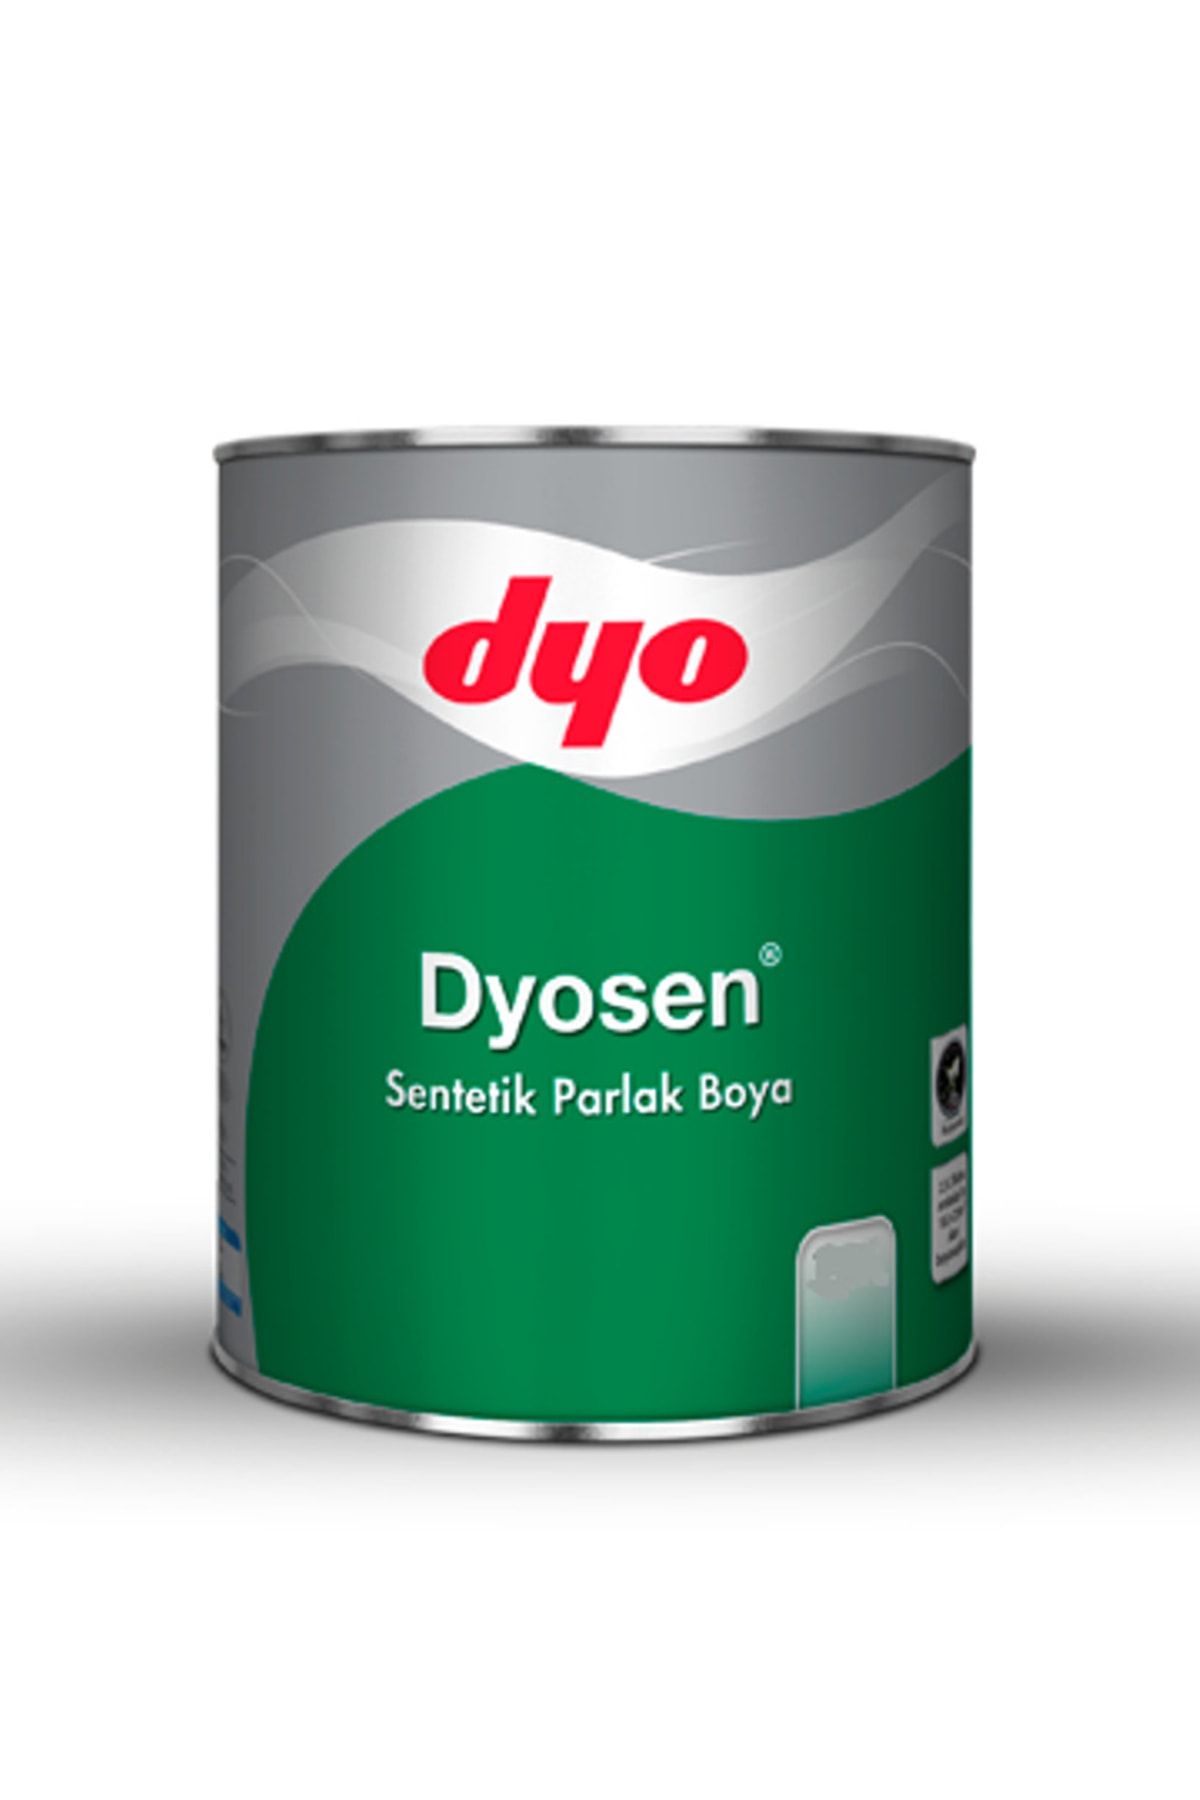 Dyo Dyosen Sentetik Parlak Boya 2,5 litre (Violet)